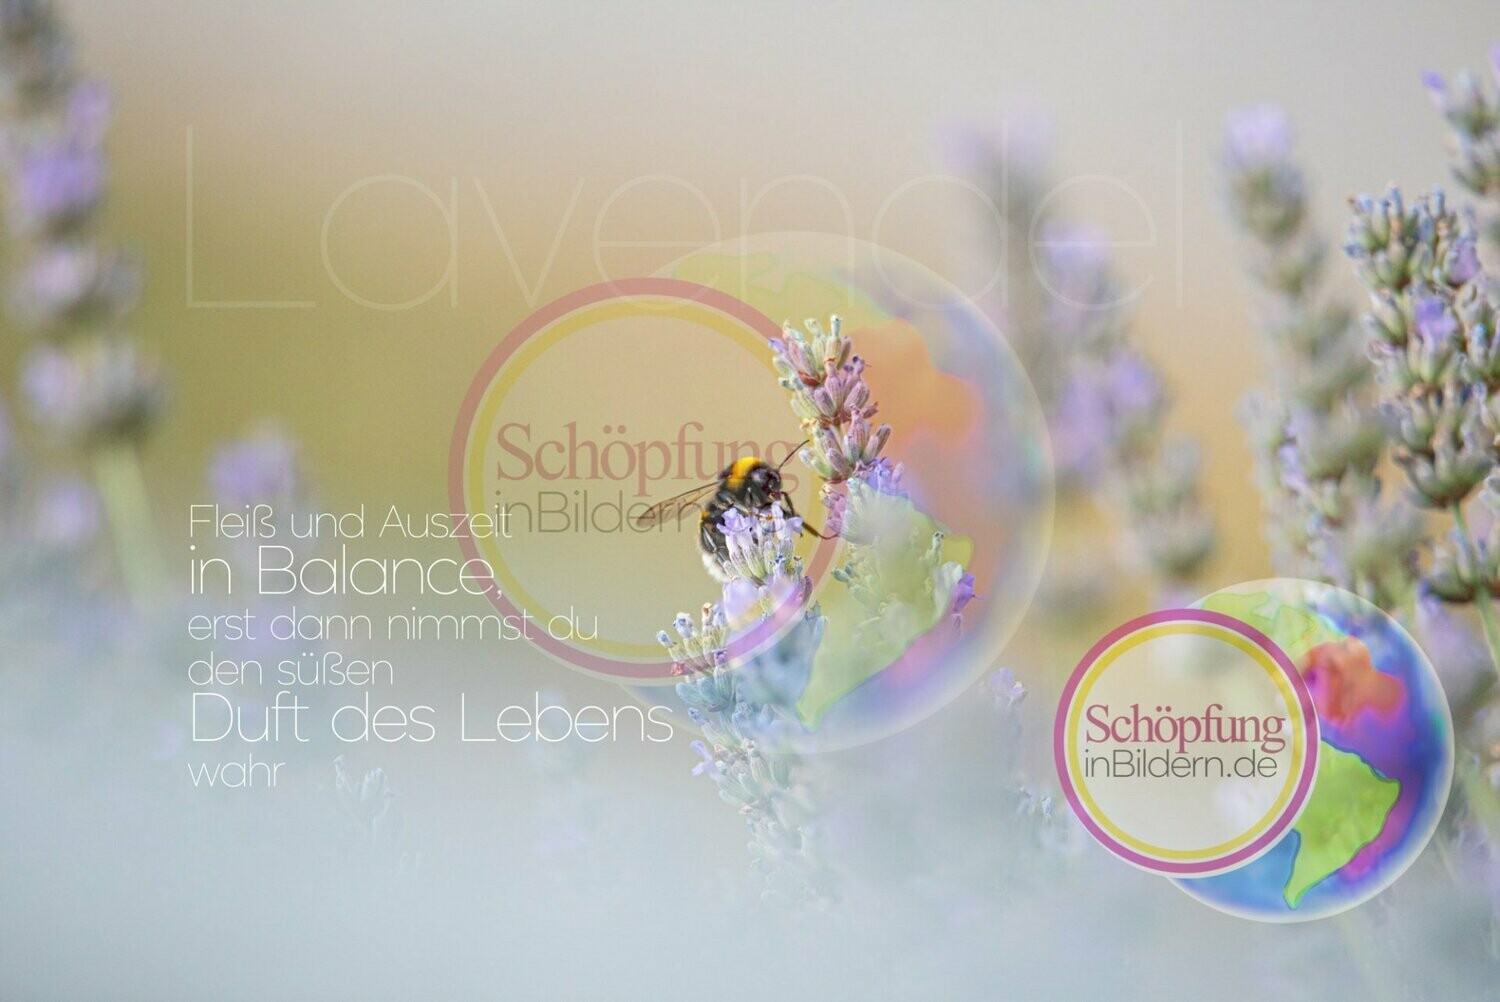 Fleiß und Auszeit in Balance, erst dann nimmst du den Duft des Lebens wahr - hochauflösendes Lavendel-Bienen-Bild mit Spruch zum Download